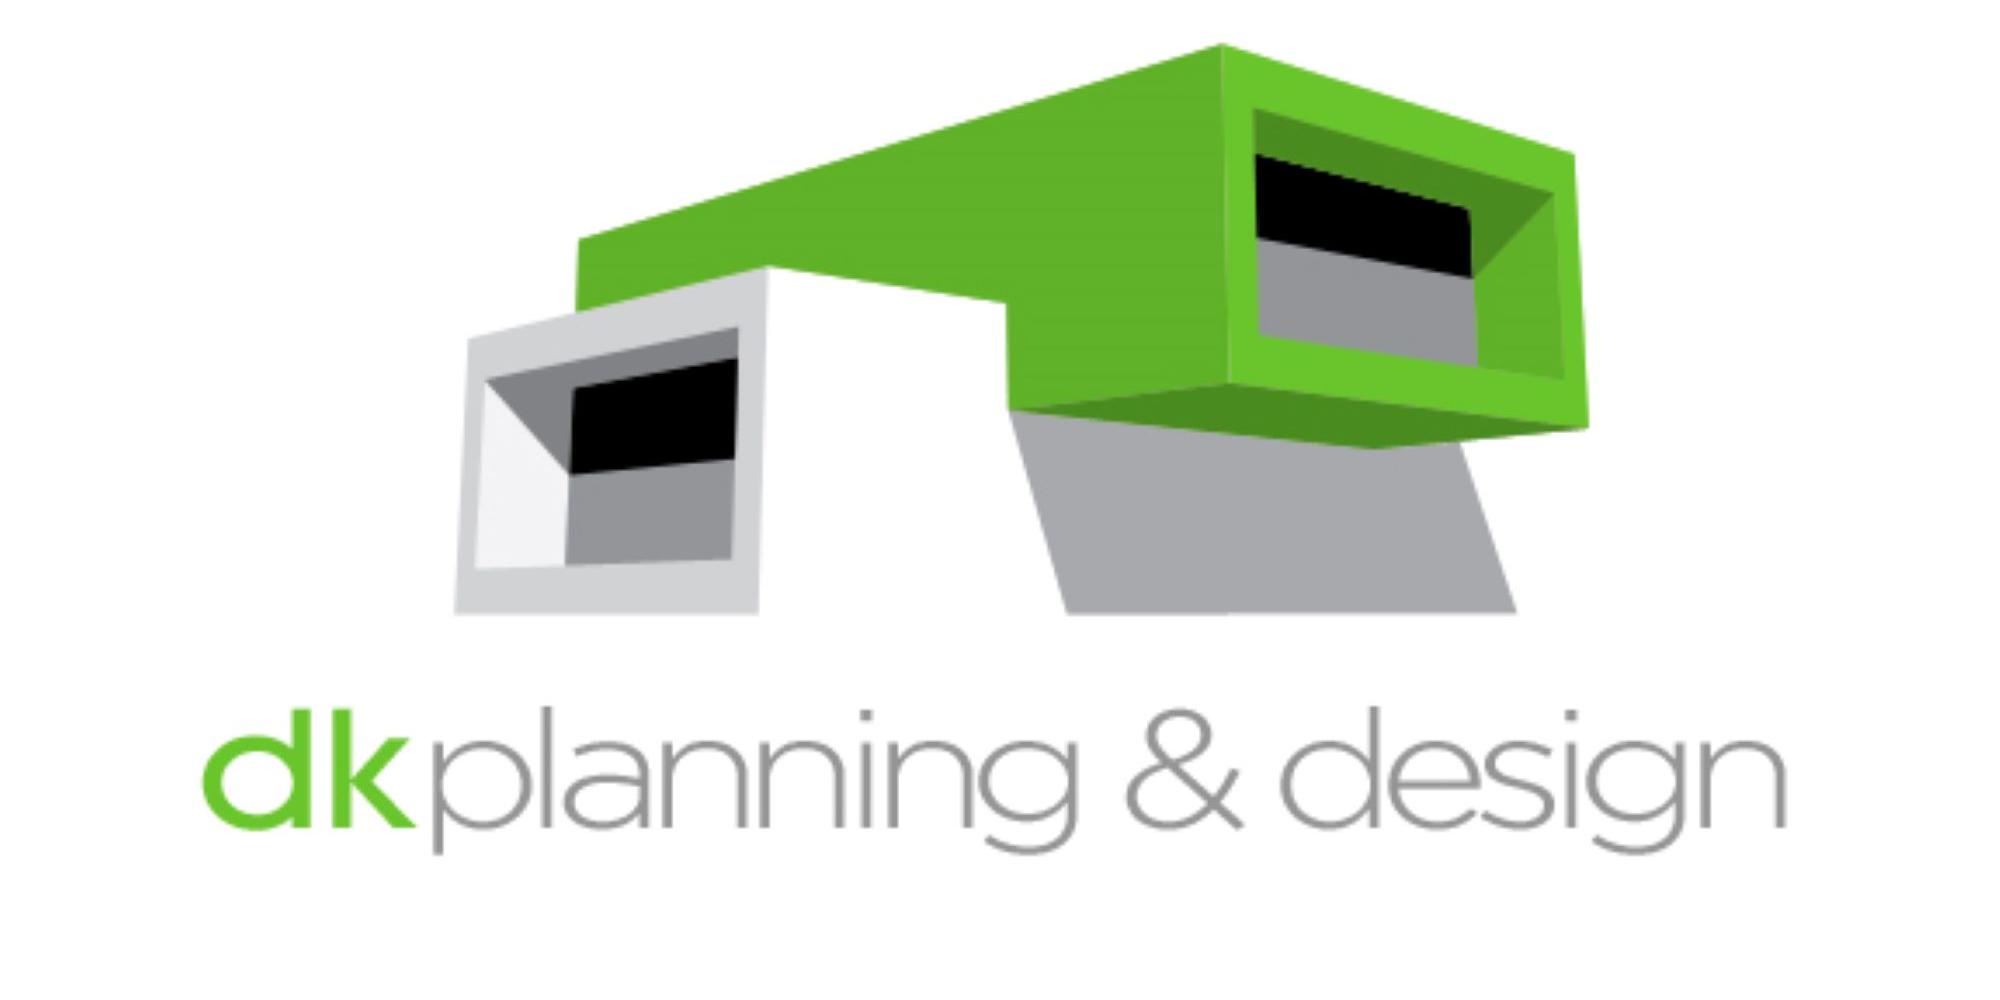 Richard Lee, dk planning & design